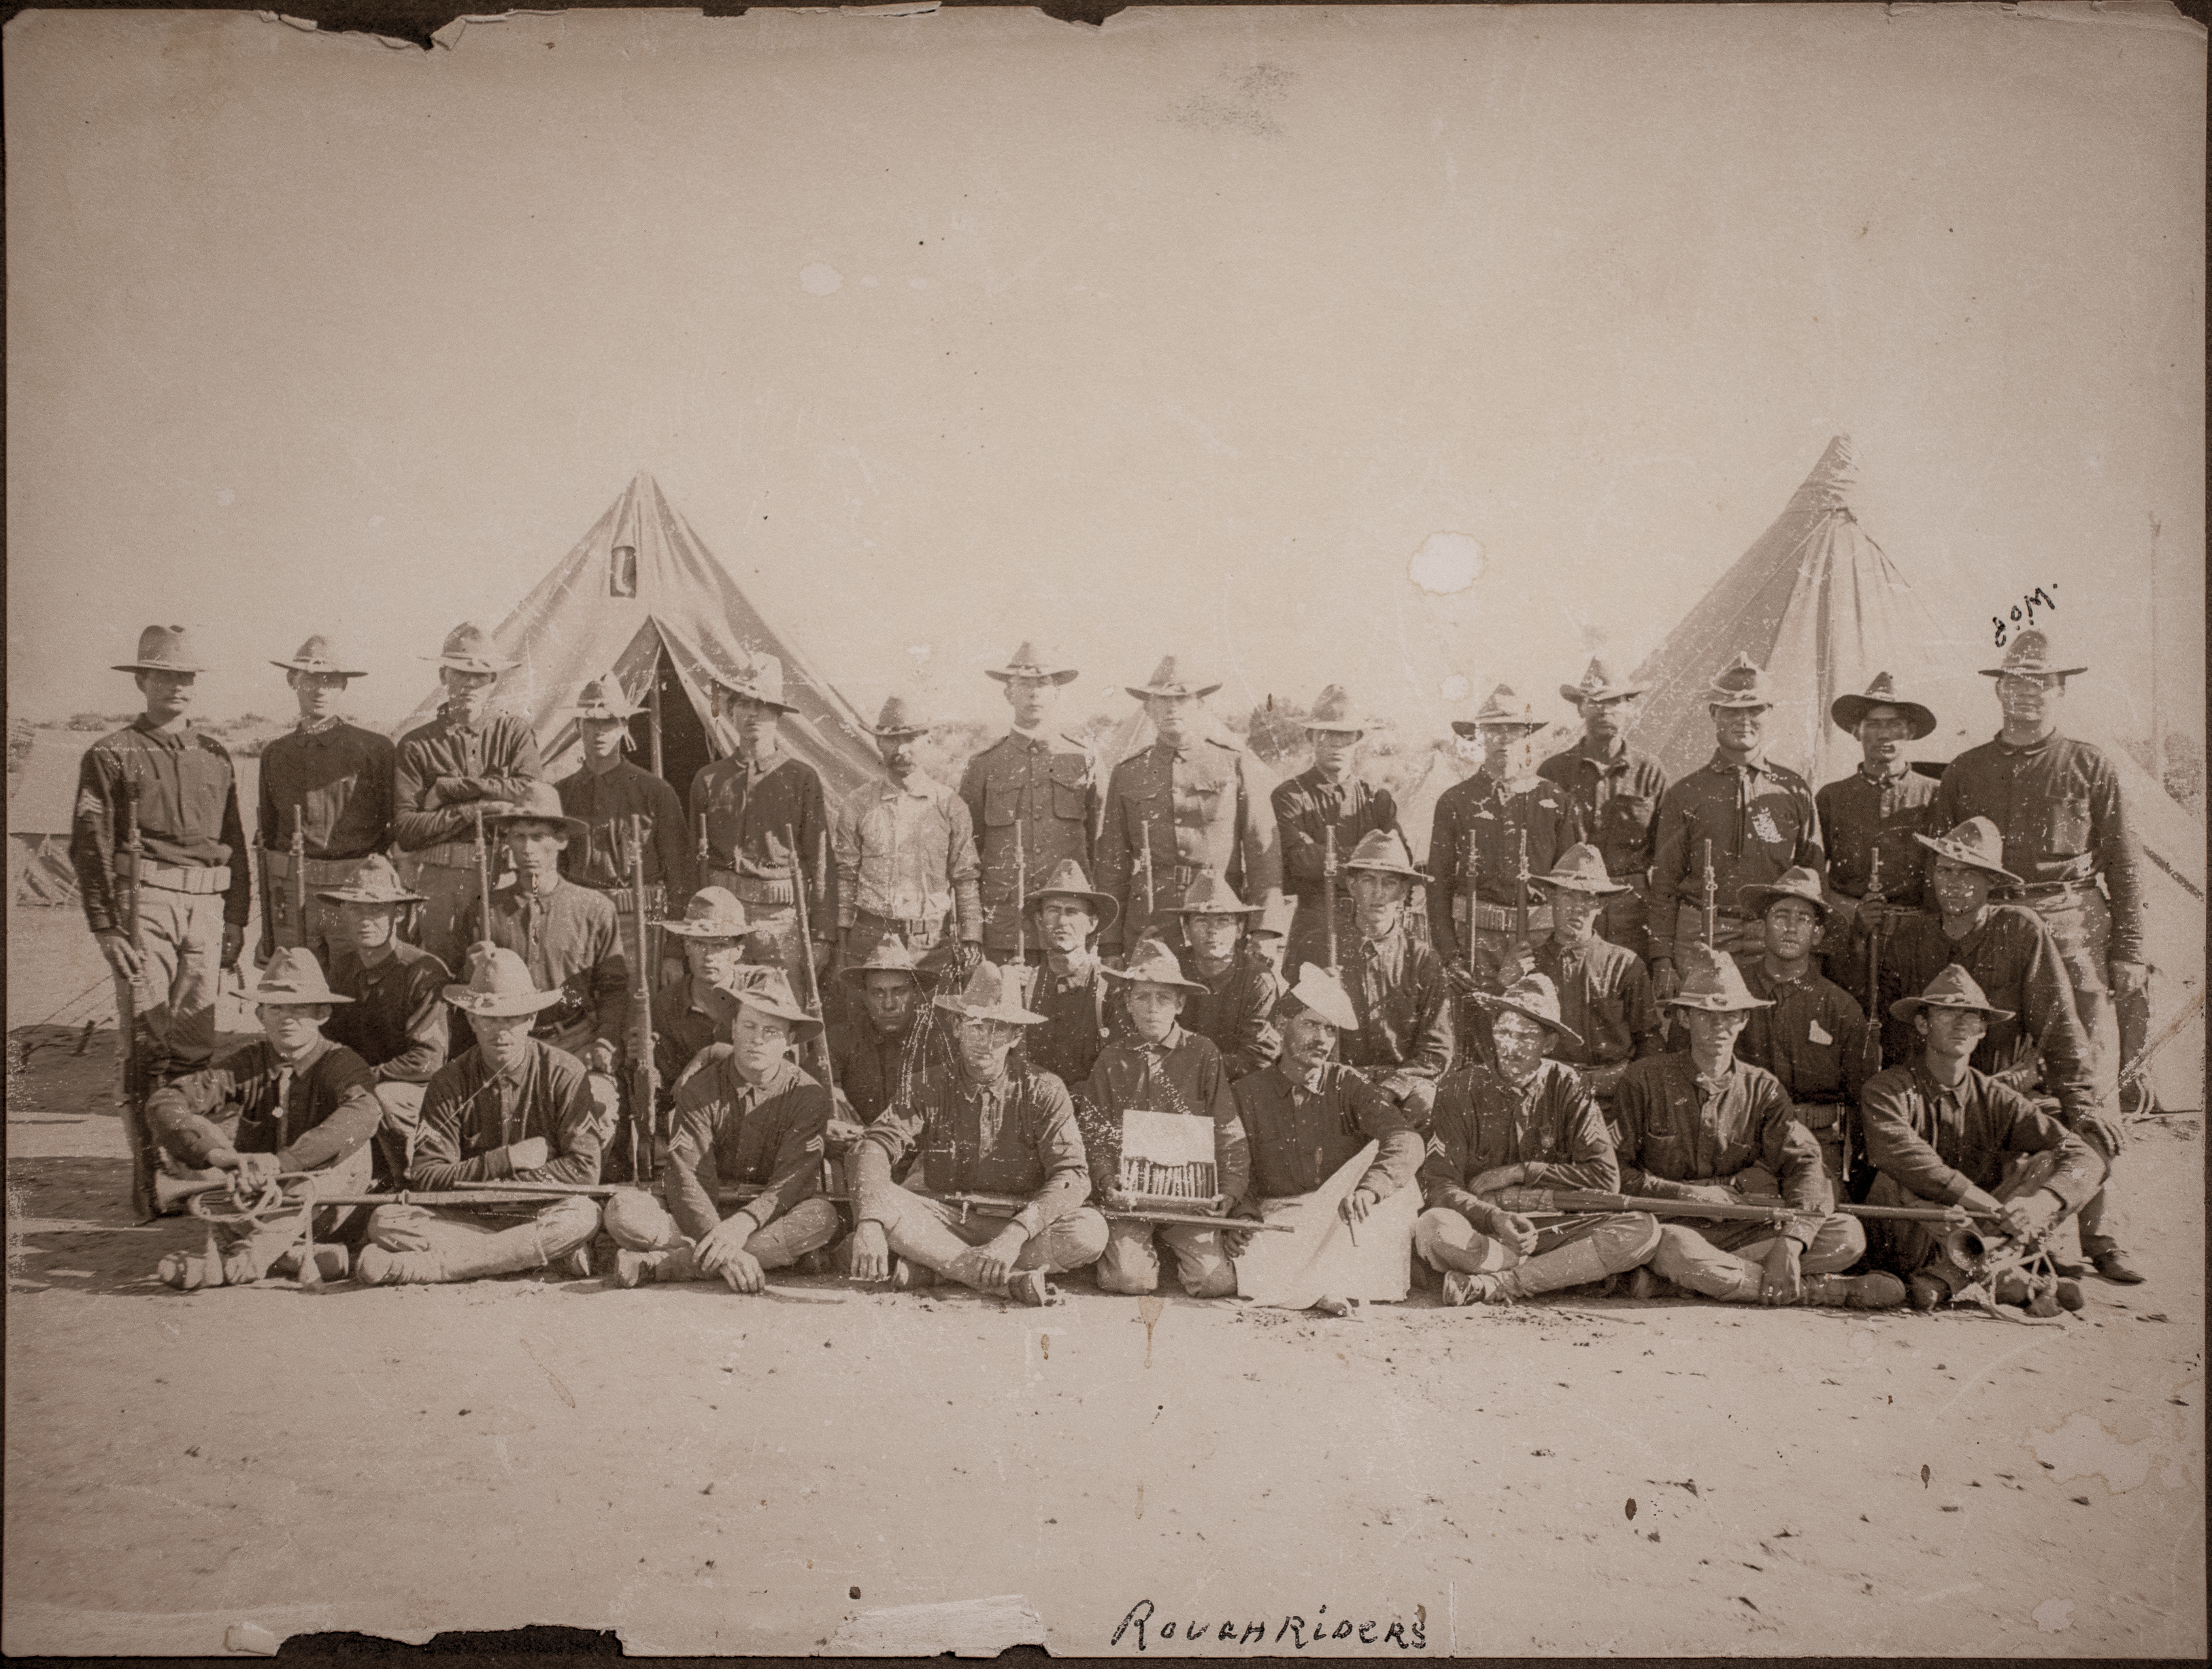 Rough Riders Troop C, San Antonio, Texas 1898